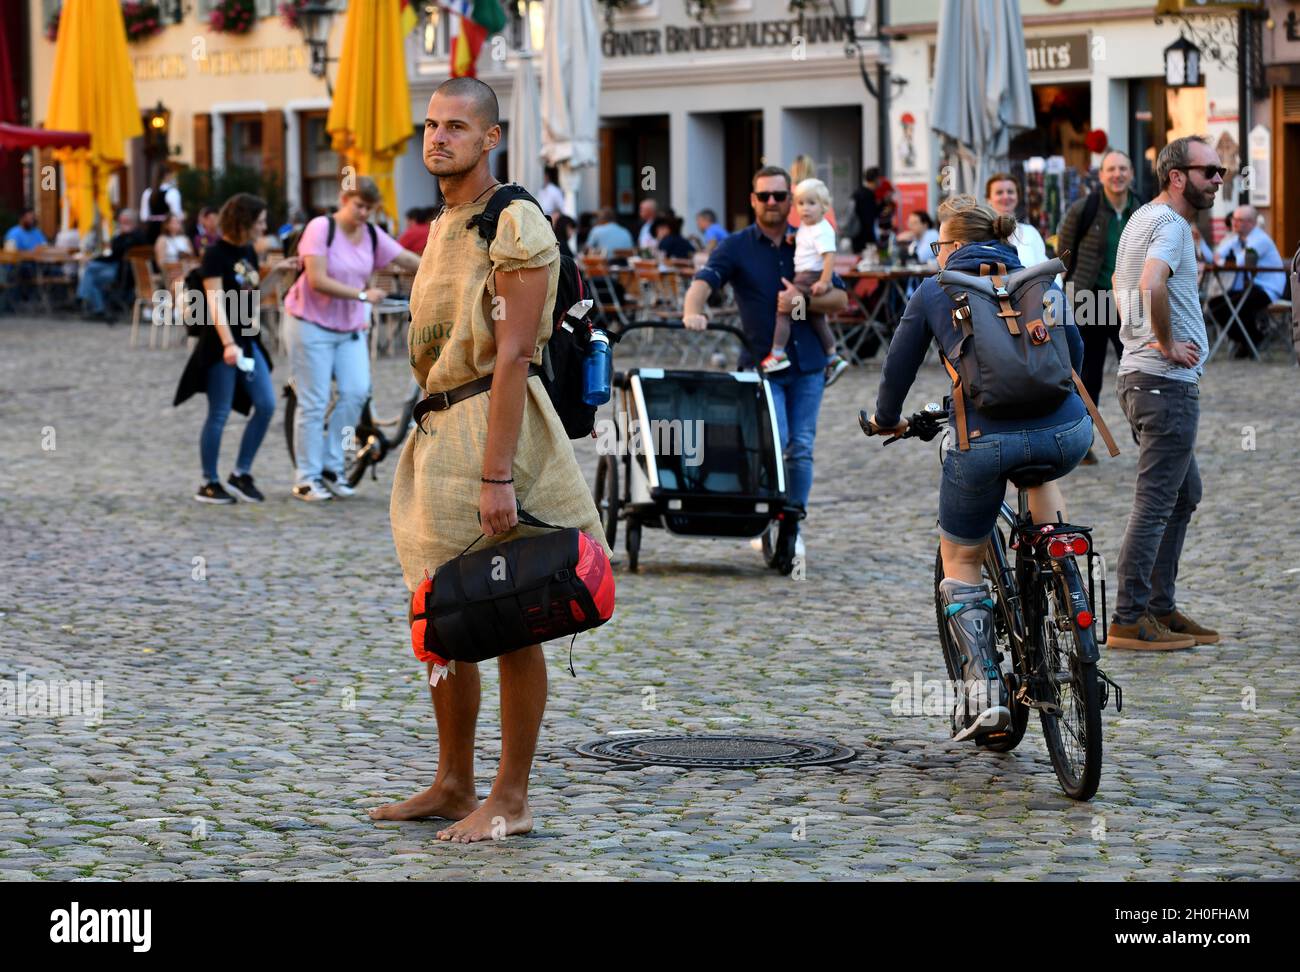 Man wearing sackcloth clothing on cobbled street in Freiburg Germany. flamboyant, stylishness, stylish, Stock Photo